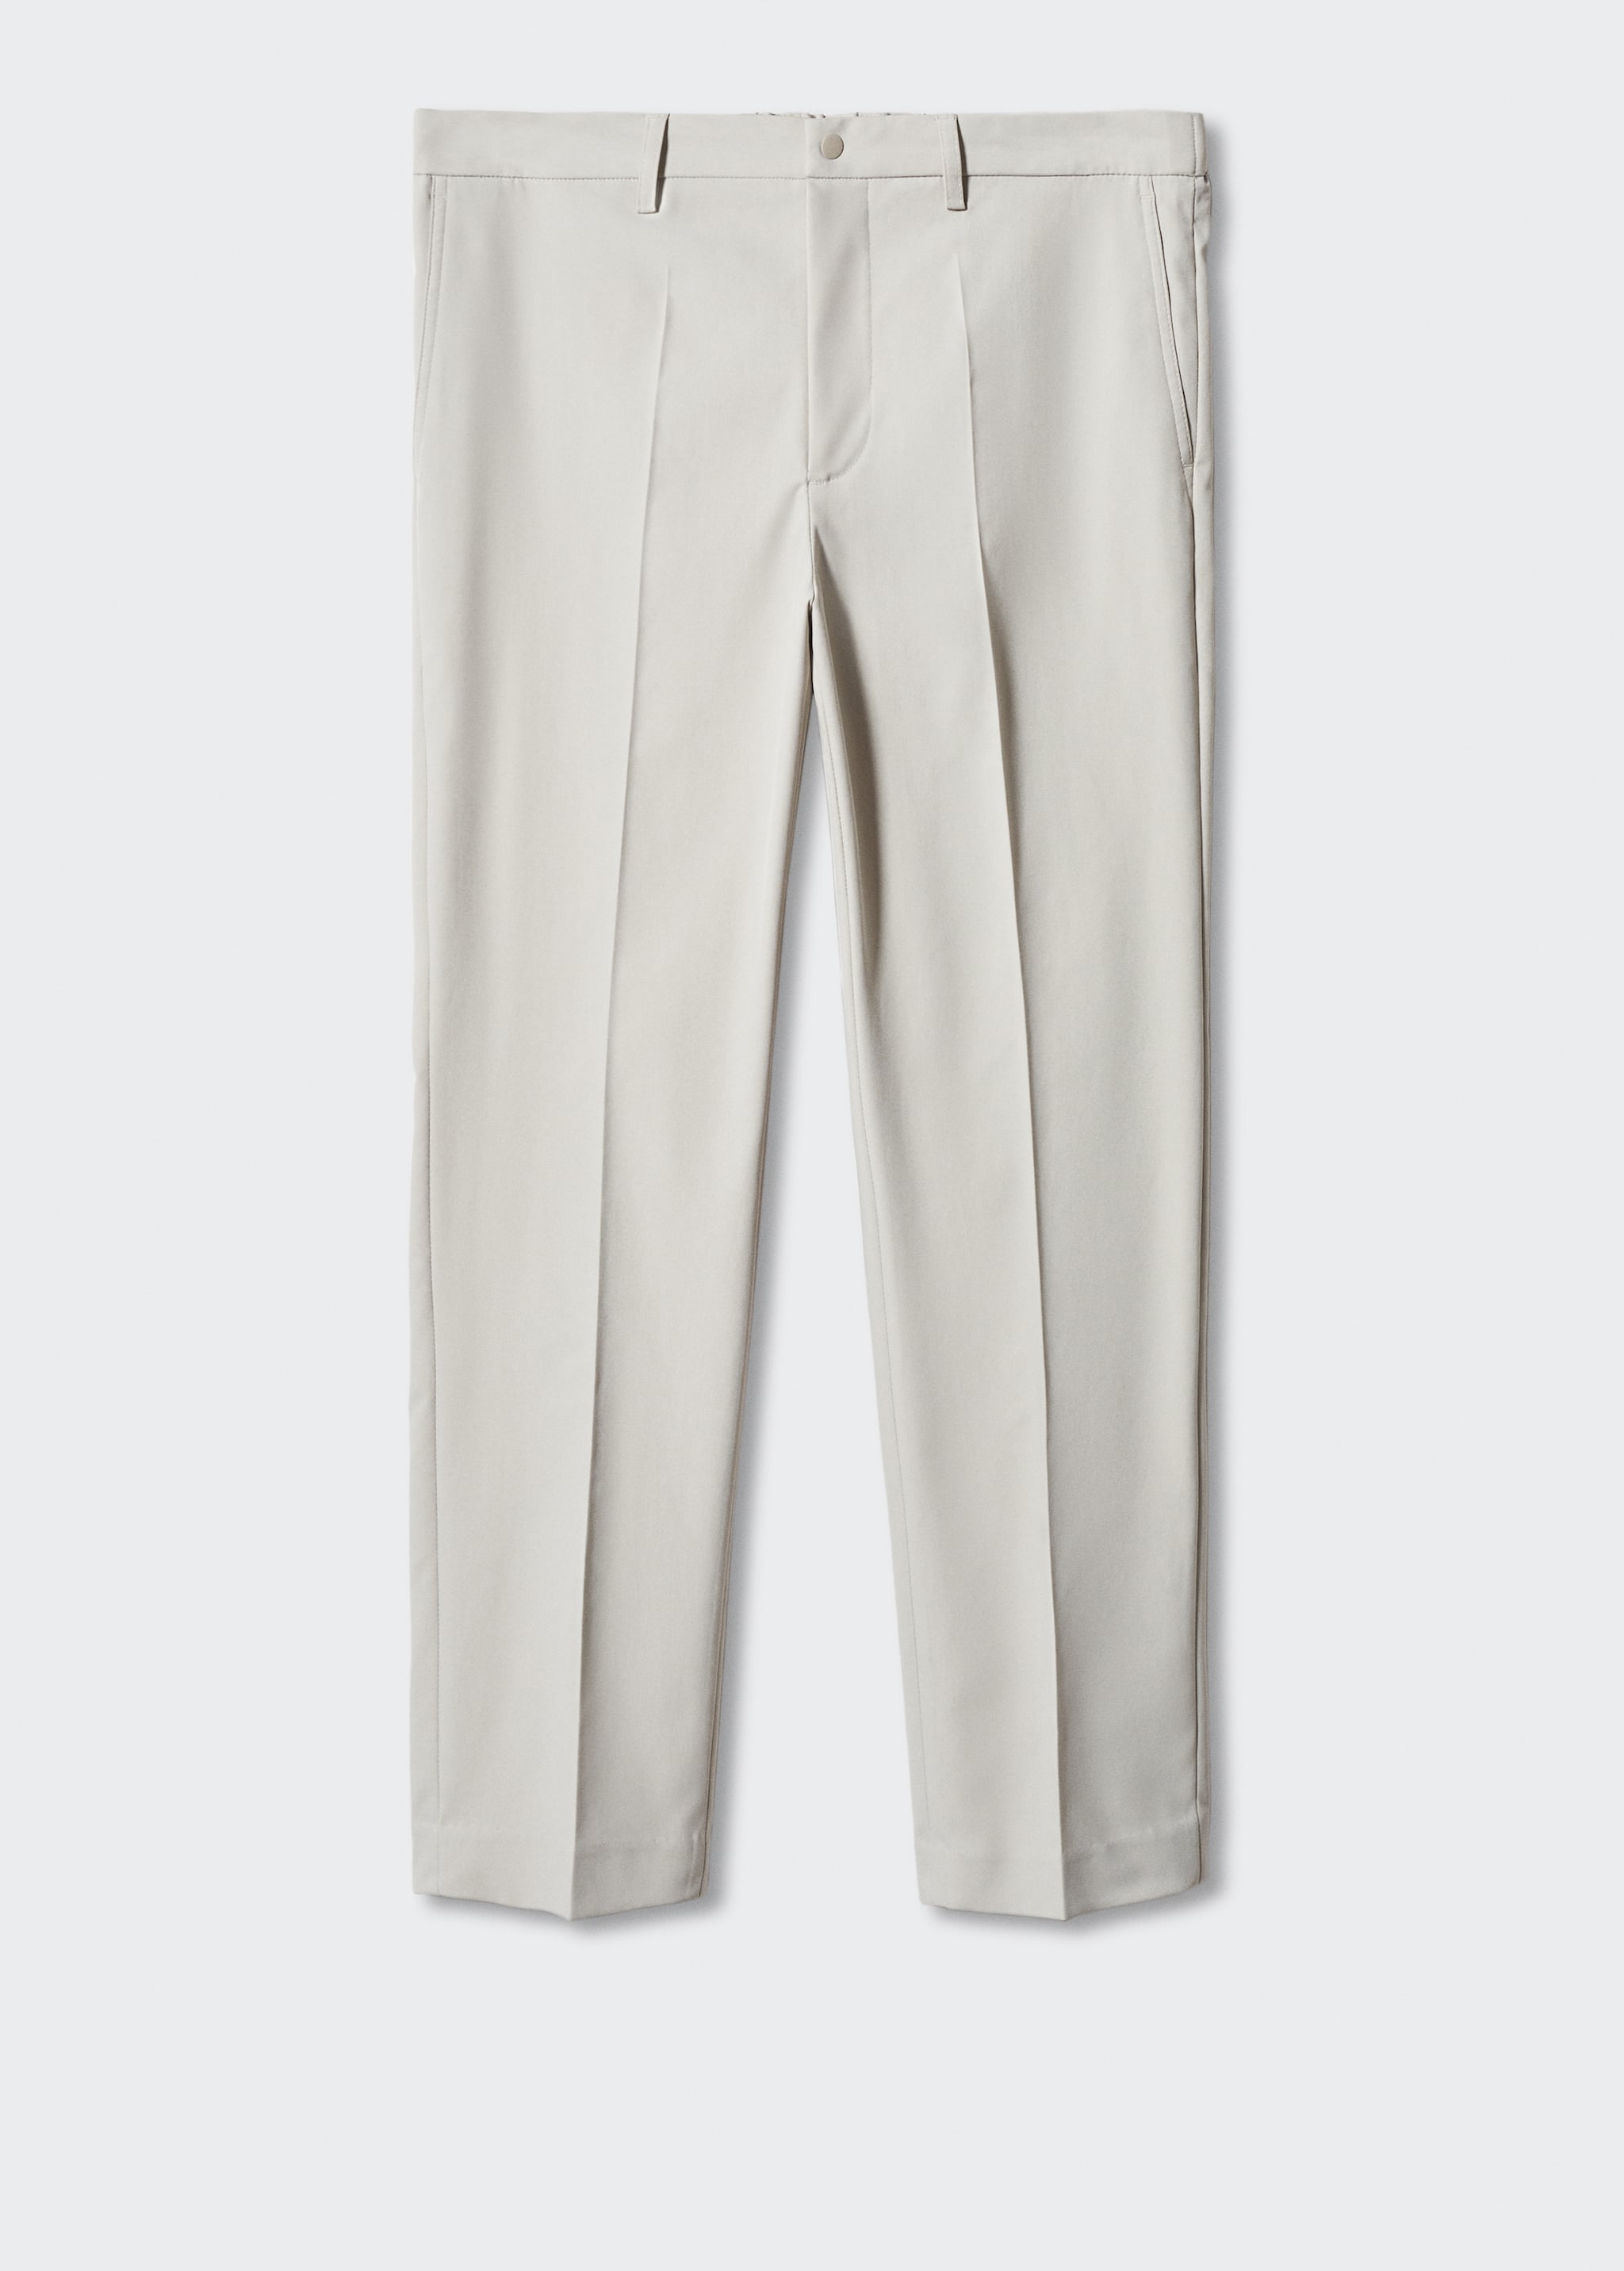 Pantalón traje slim fit tejido técnico - Artículo sin modelo